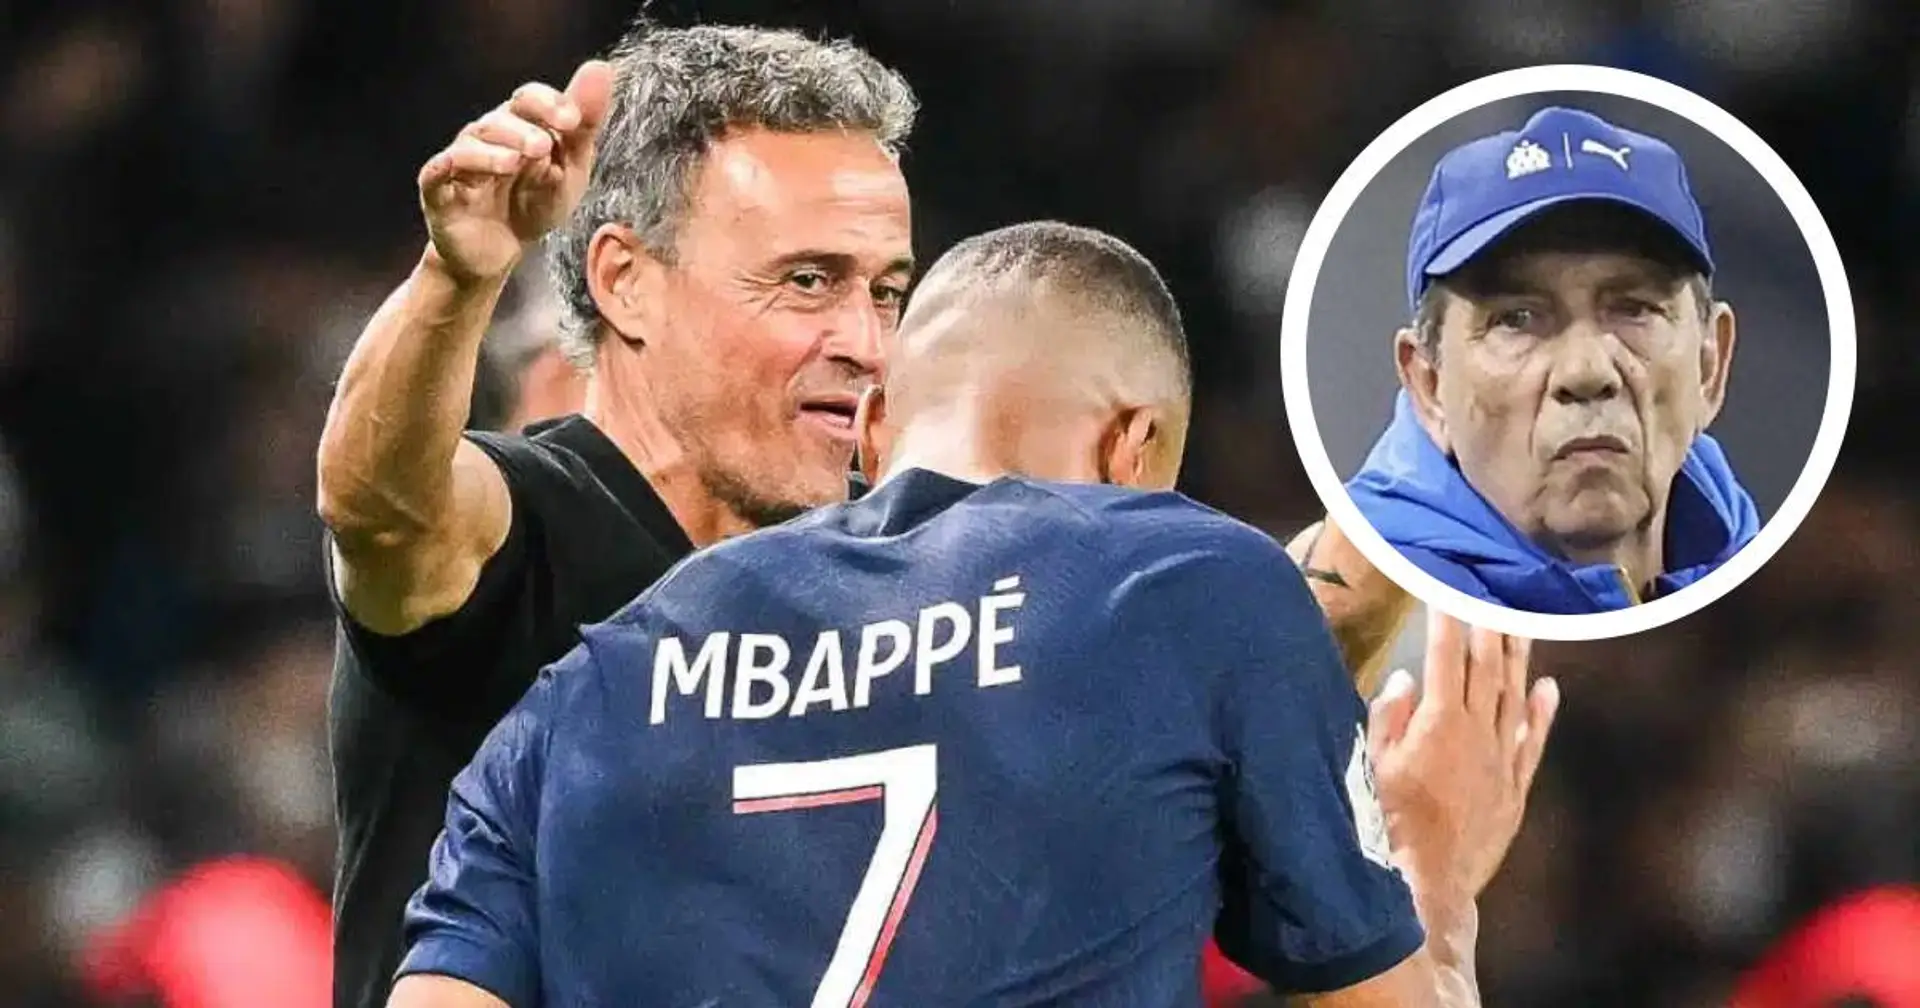 Le coach de l'OM révèle s'il va mettre un plan spécial "anti-Mbappé" et salue la gestion d'effectif de Luis Enrique